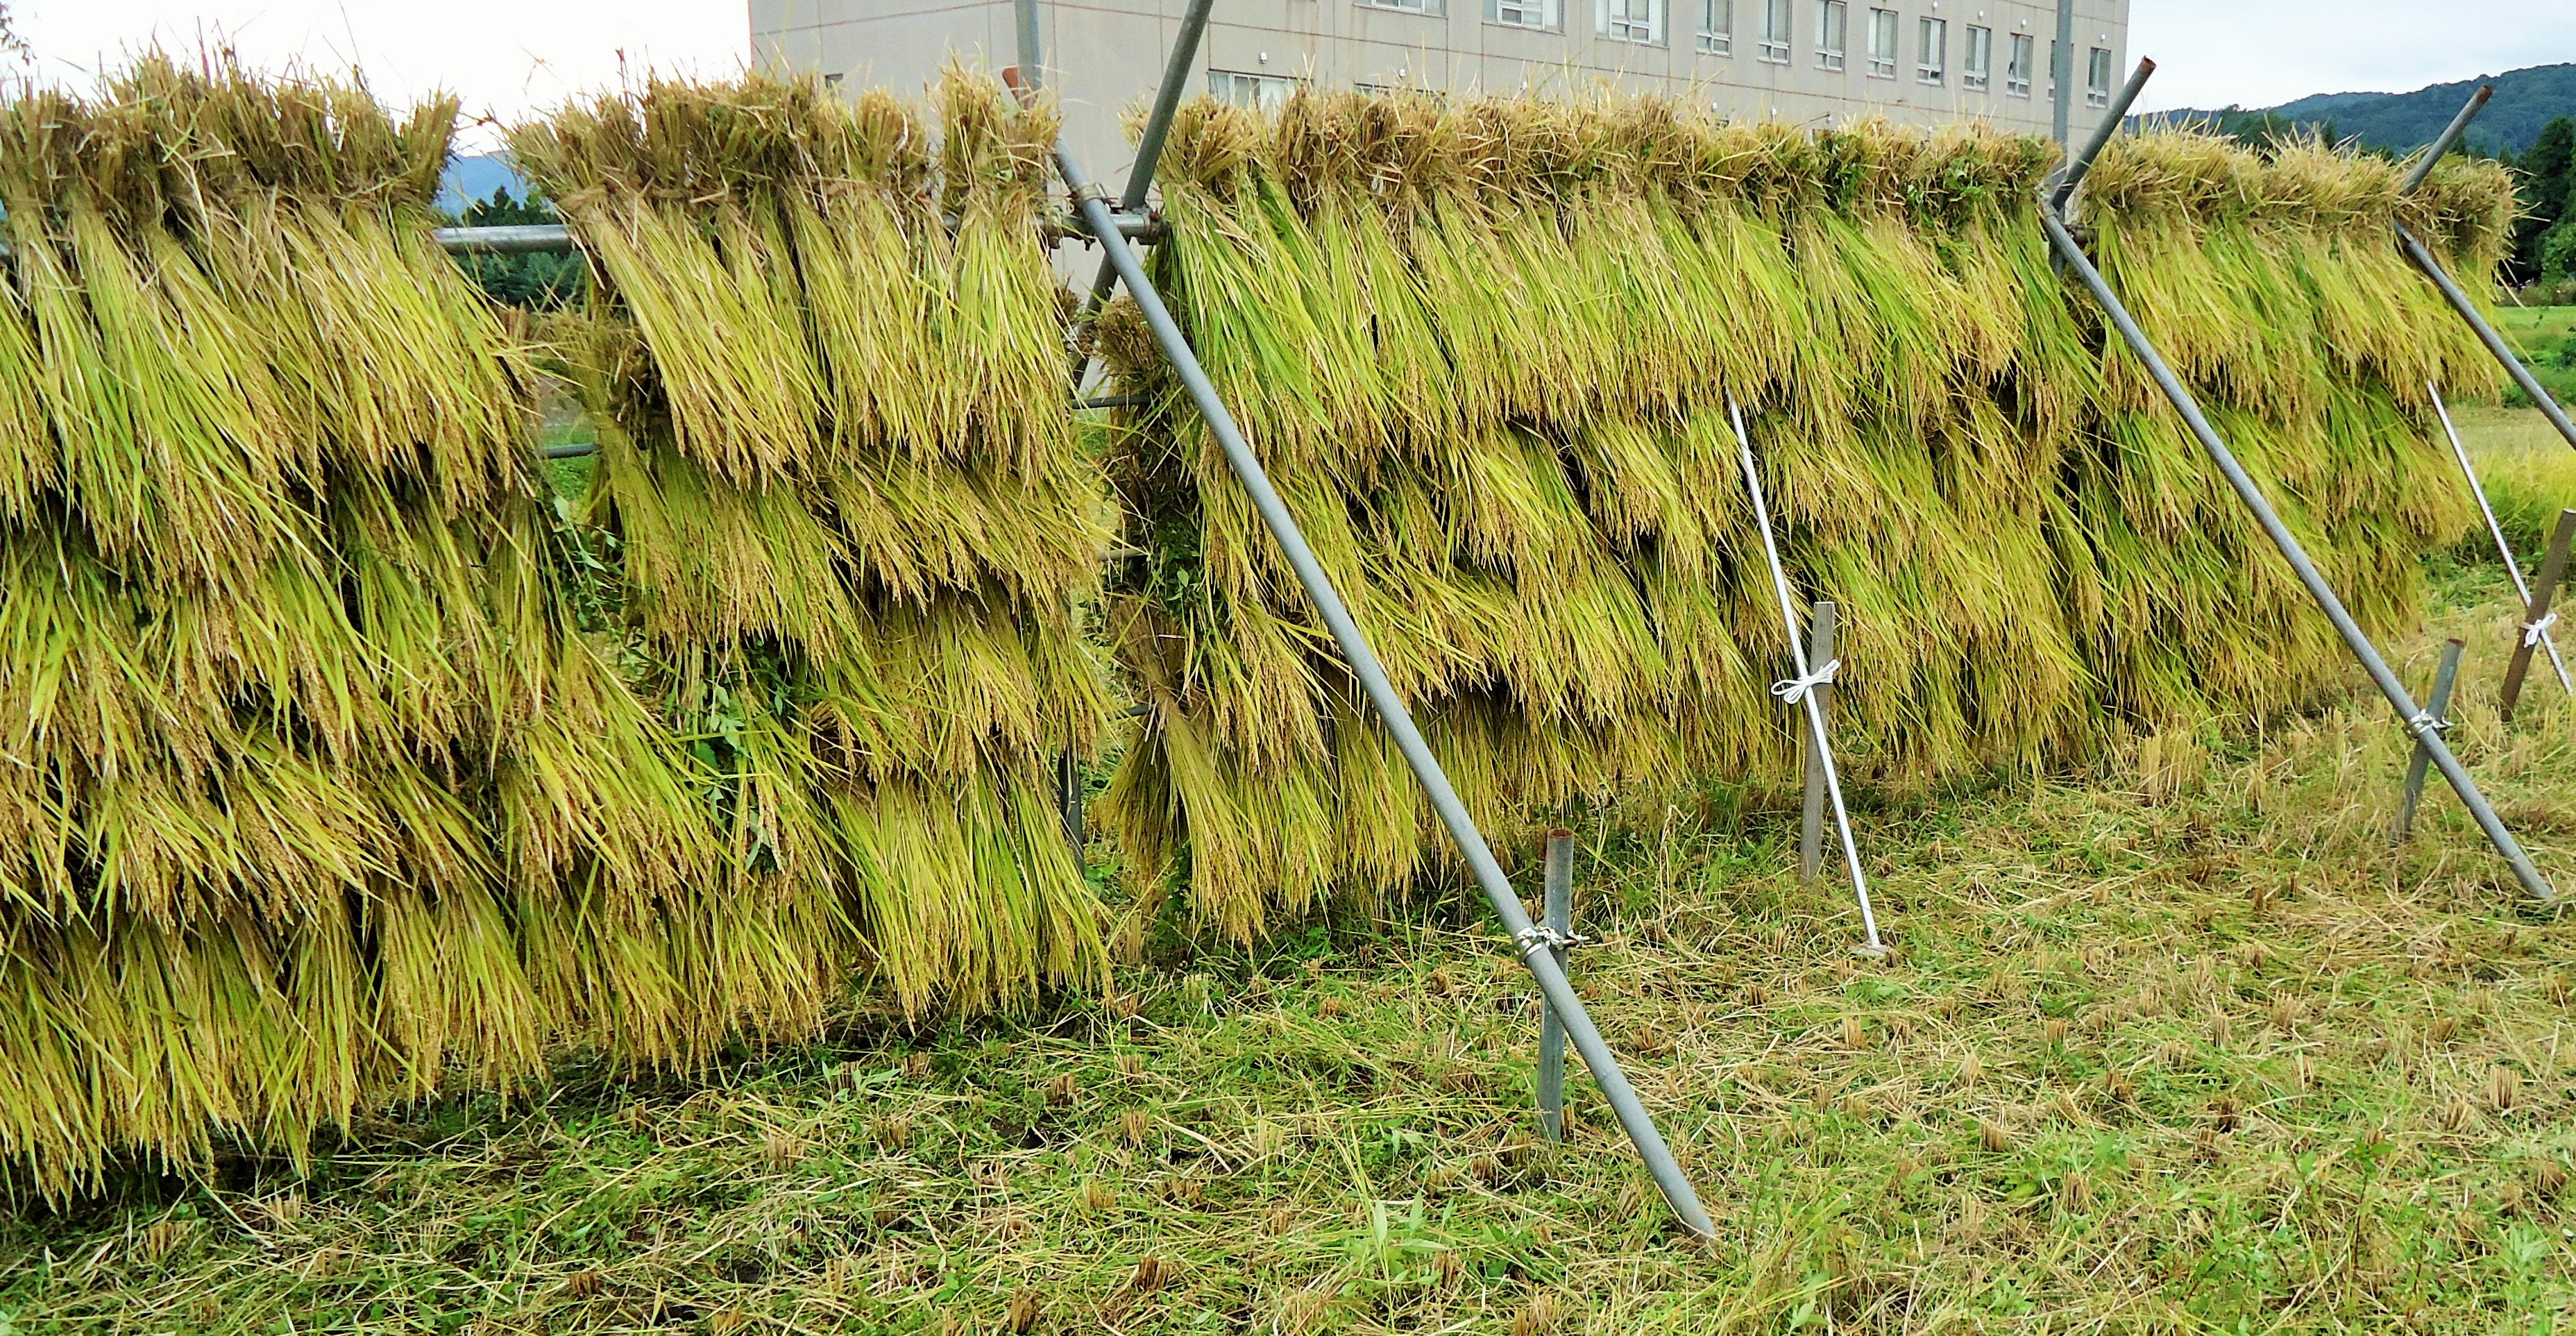 はさ掛け米 の稲刈り体験 現場レポート 持続可能な農業 養殖ビジネス